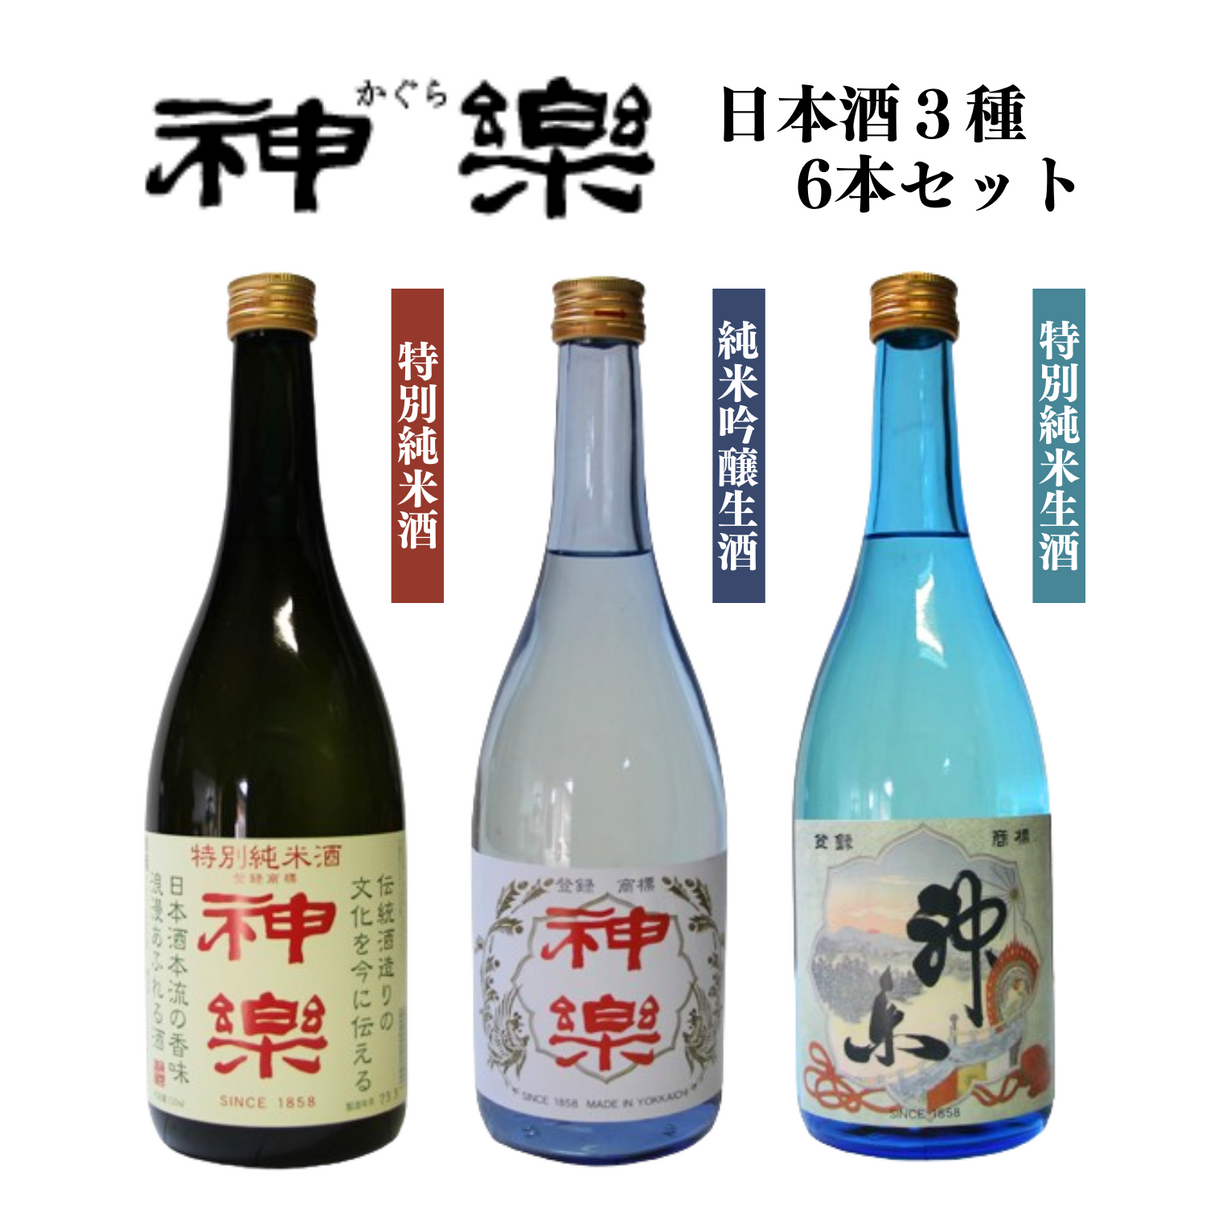 受け継がれた伝統と豊かな自然にはぐくまれた地酒ならではの美酒… 神楽 日本酒 3種 6本セット